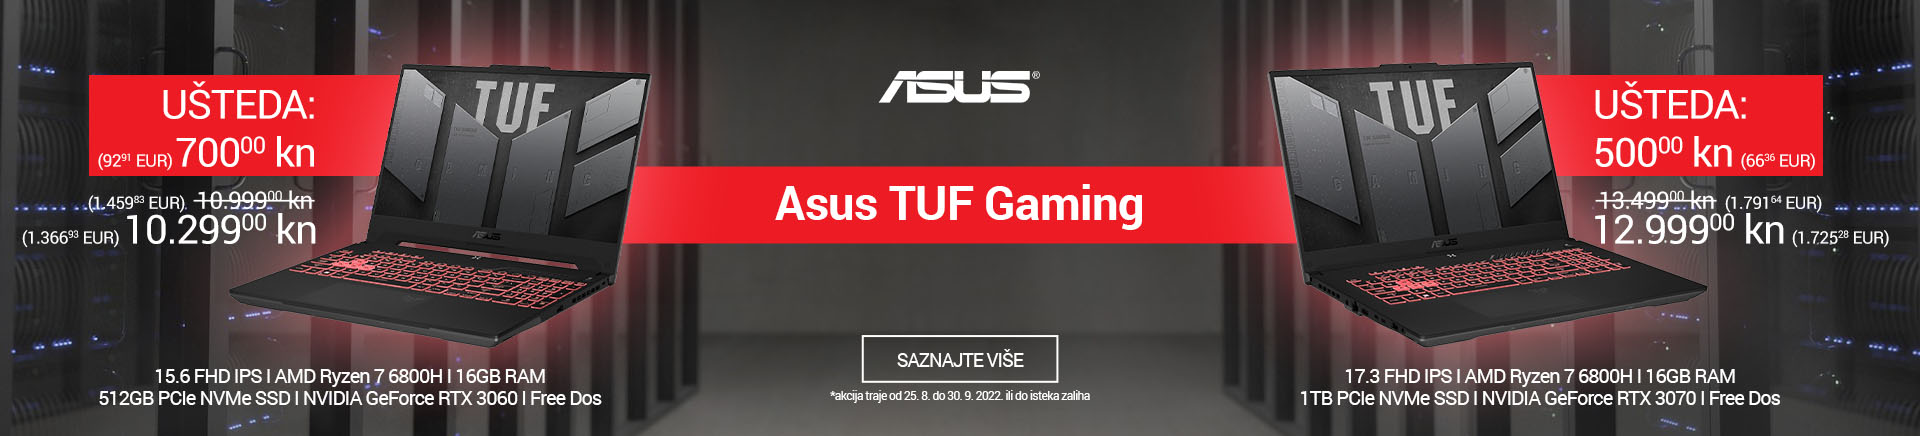 Asus TUF Gaming laptopi - ušteda do 700 kn